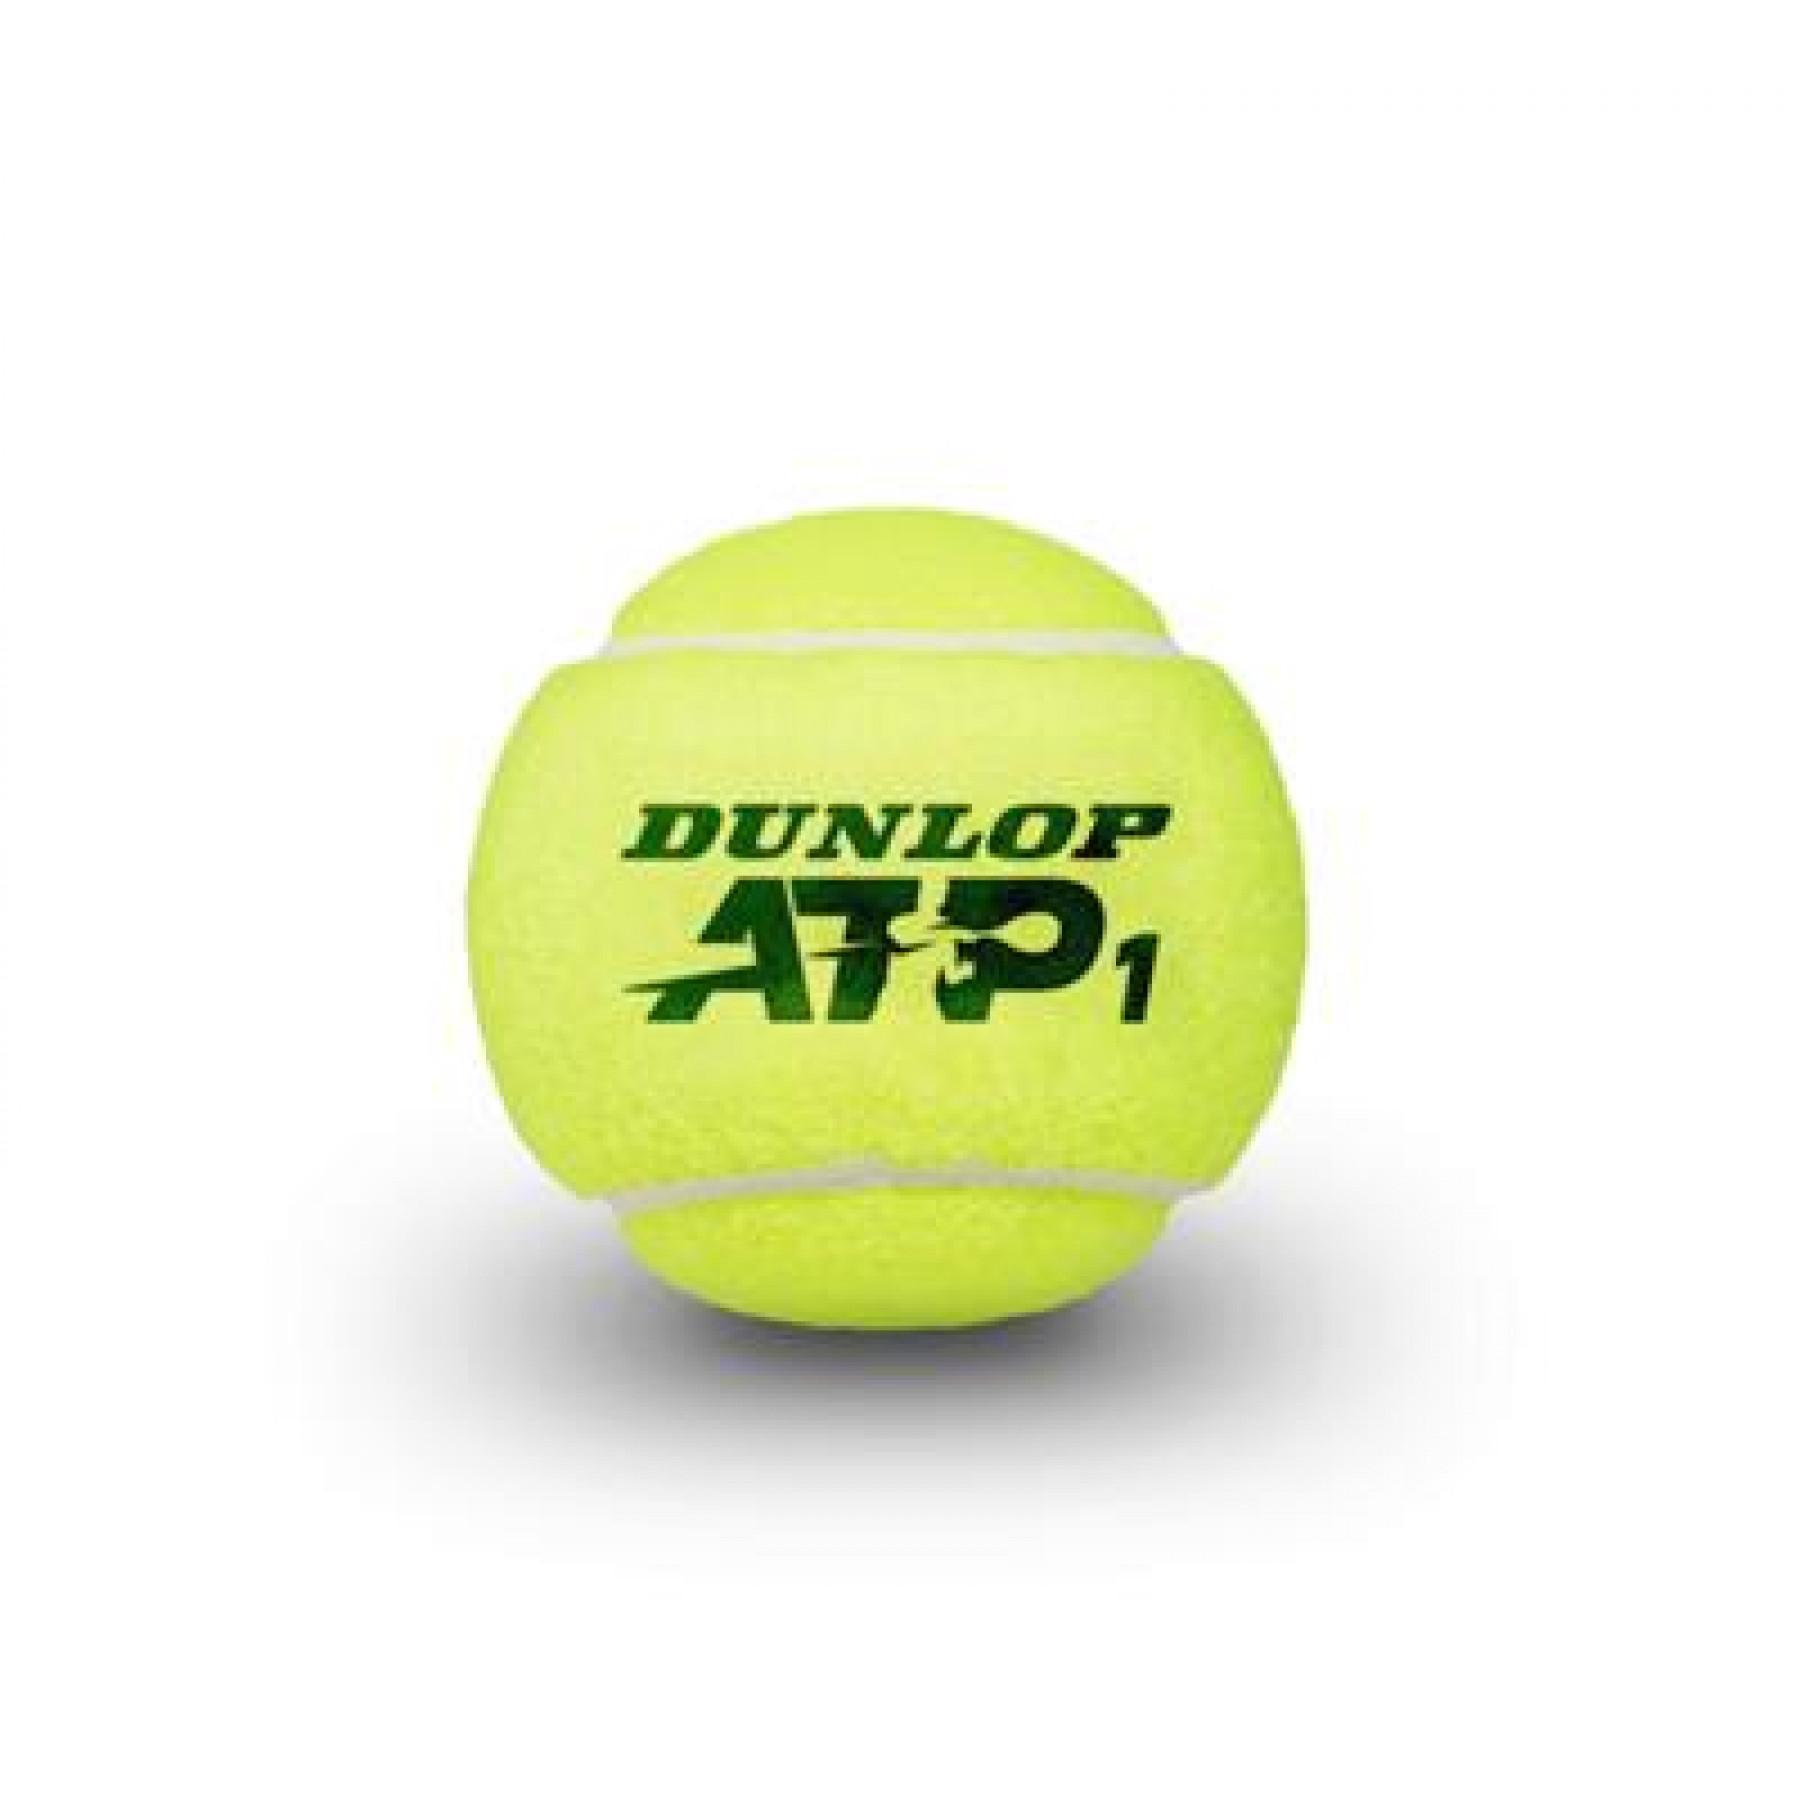 Tennis balls Dunlop ATP 4tin